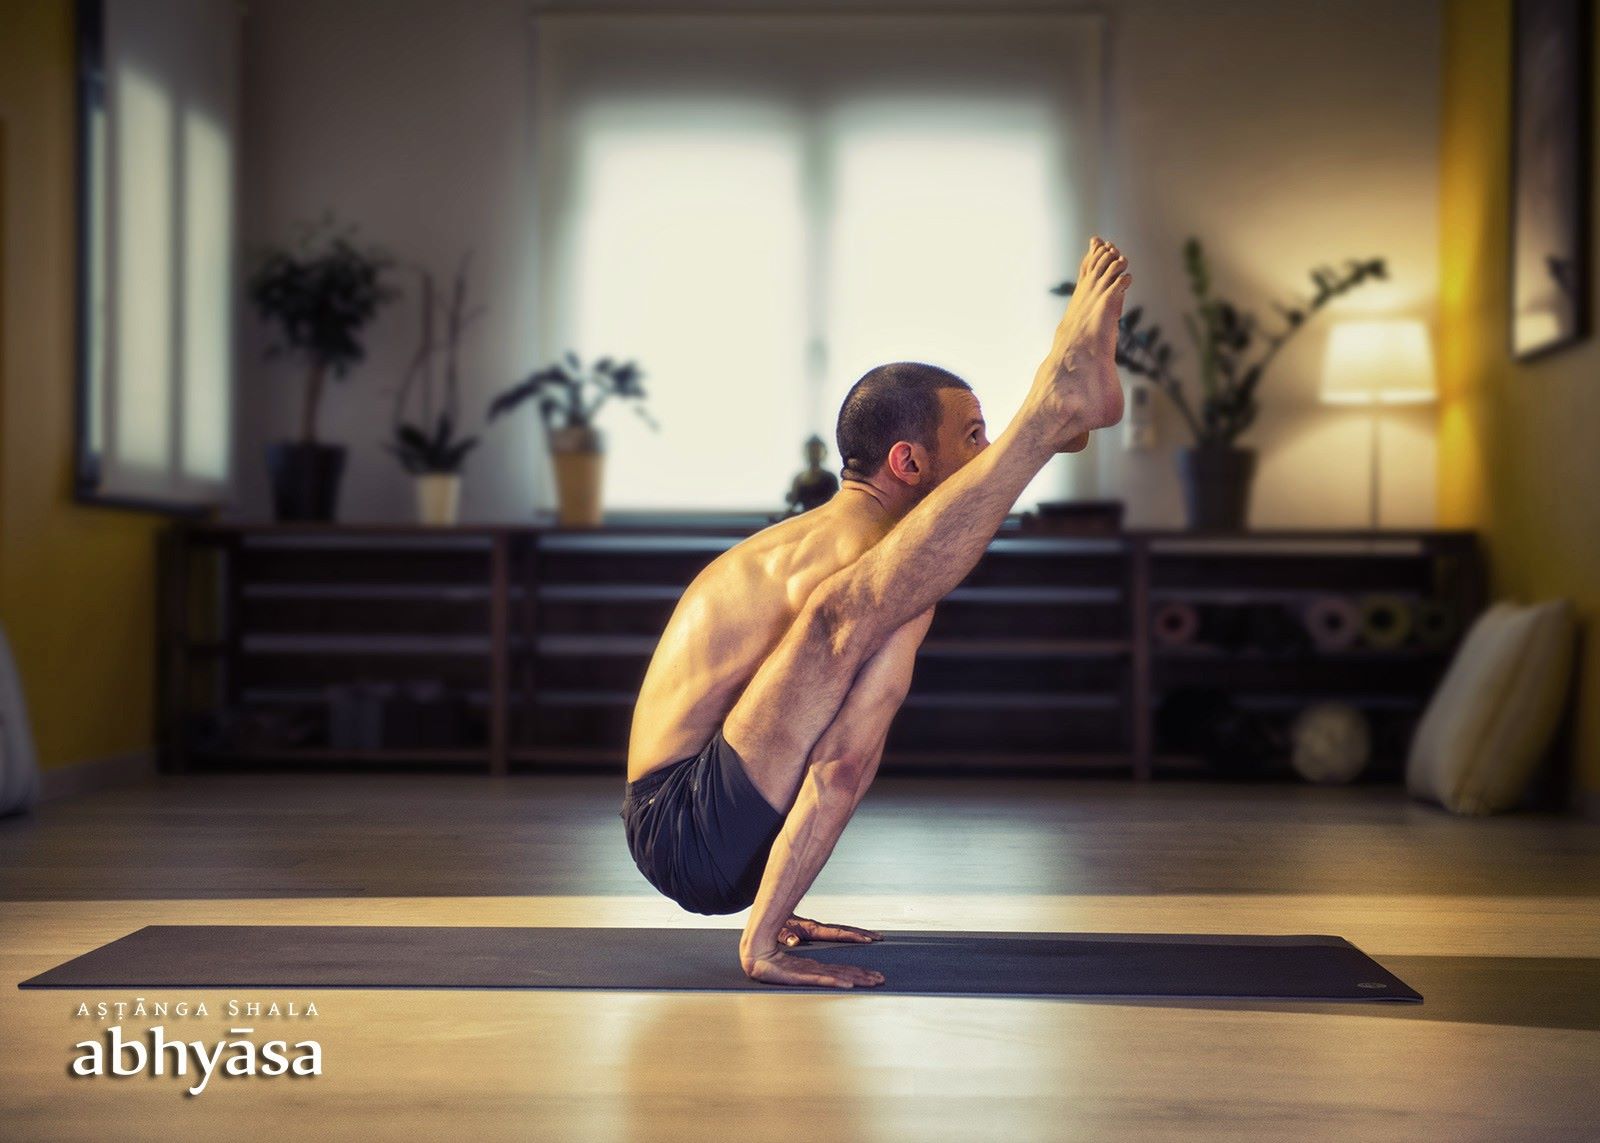 Abhyasa Ashtanga Yoga Shala